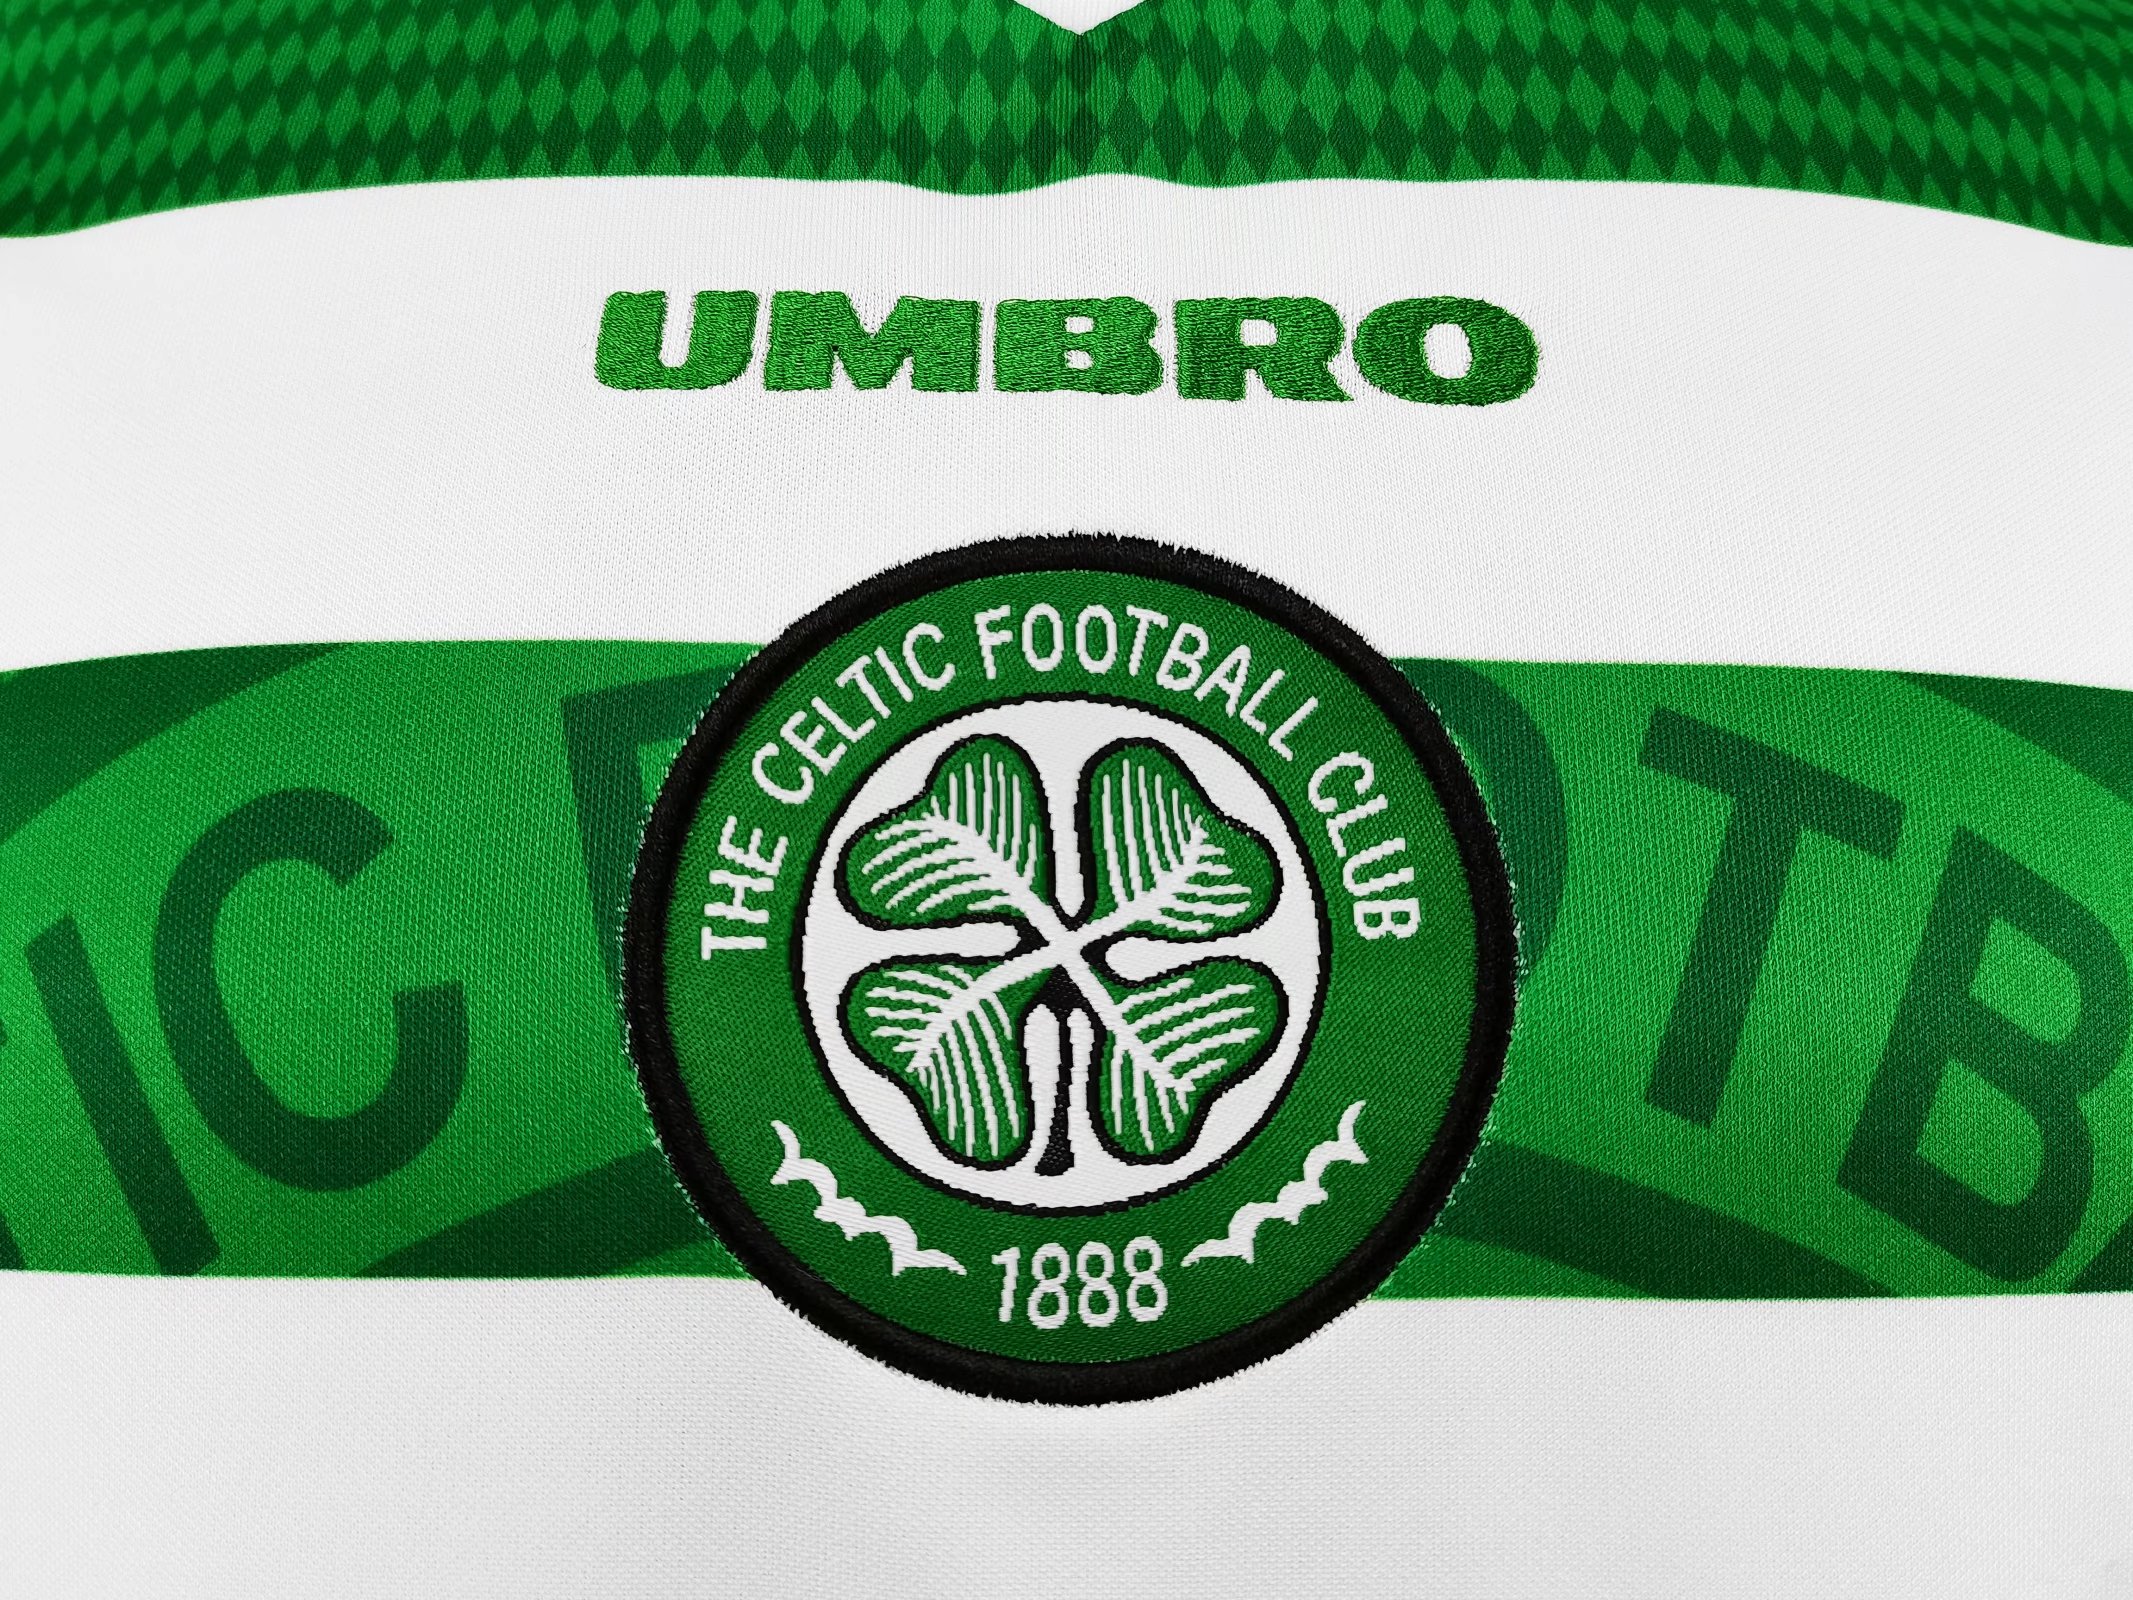 Retro 98/99 Celtic home Soccer Jersey - Kitsociety